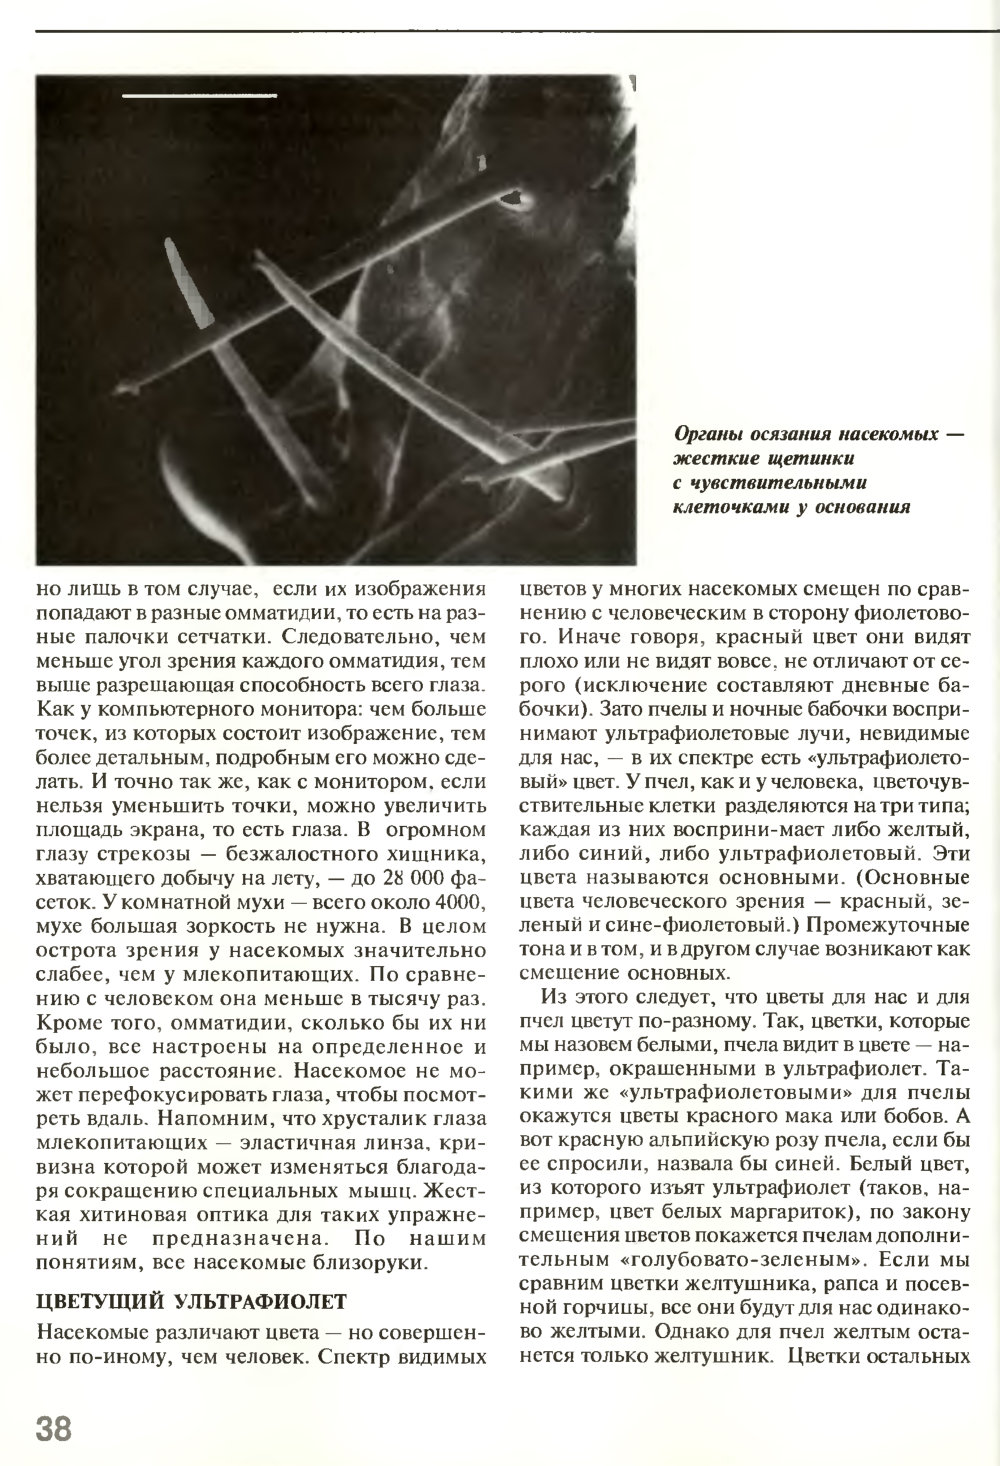 Взгляд на мир шестиугольными глазами. В.Г. Митрофанов. Химия и жизнь, 1995, №5, с.36-41. Фотокопия №3